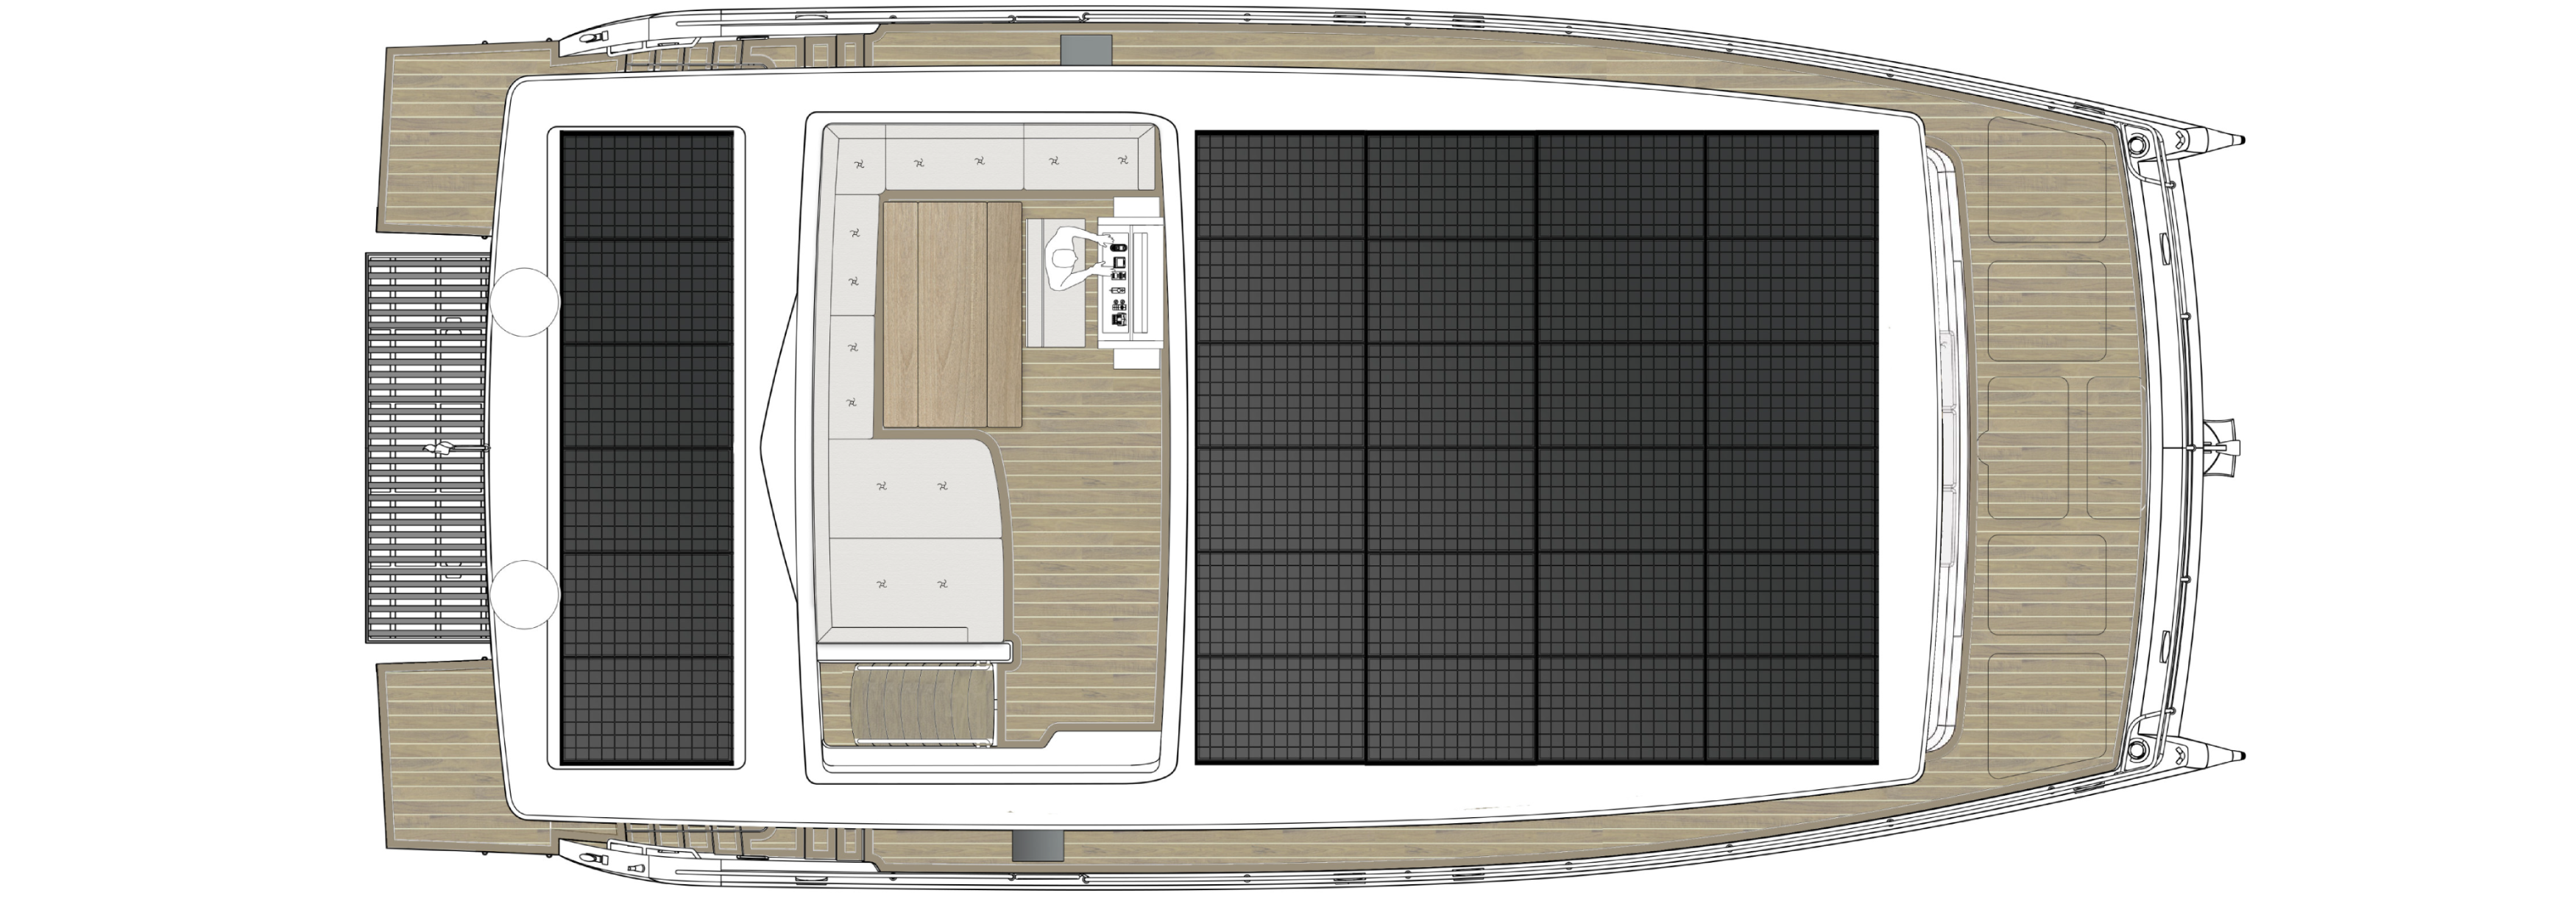 Yacht flybridge plan